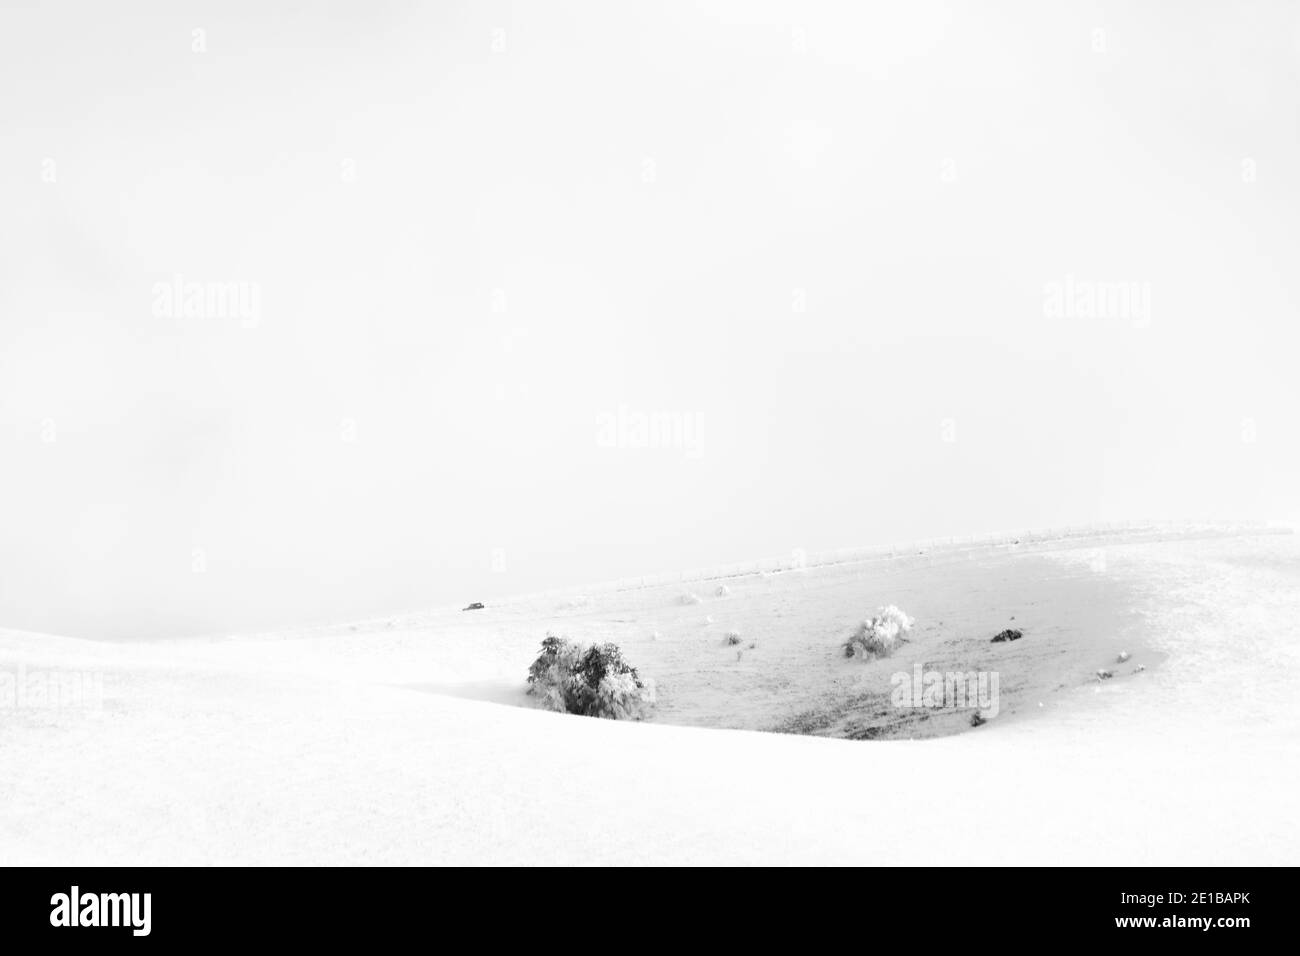 Ein sehr minimalistischer Blick auf einen schneebedeckten Berg Stockfoto